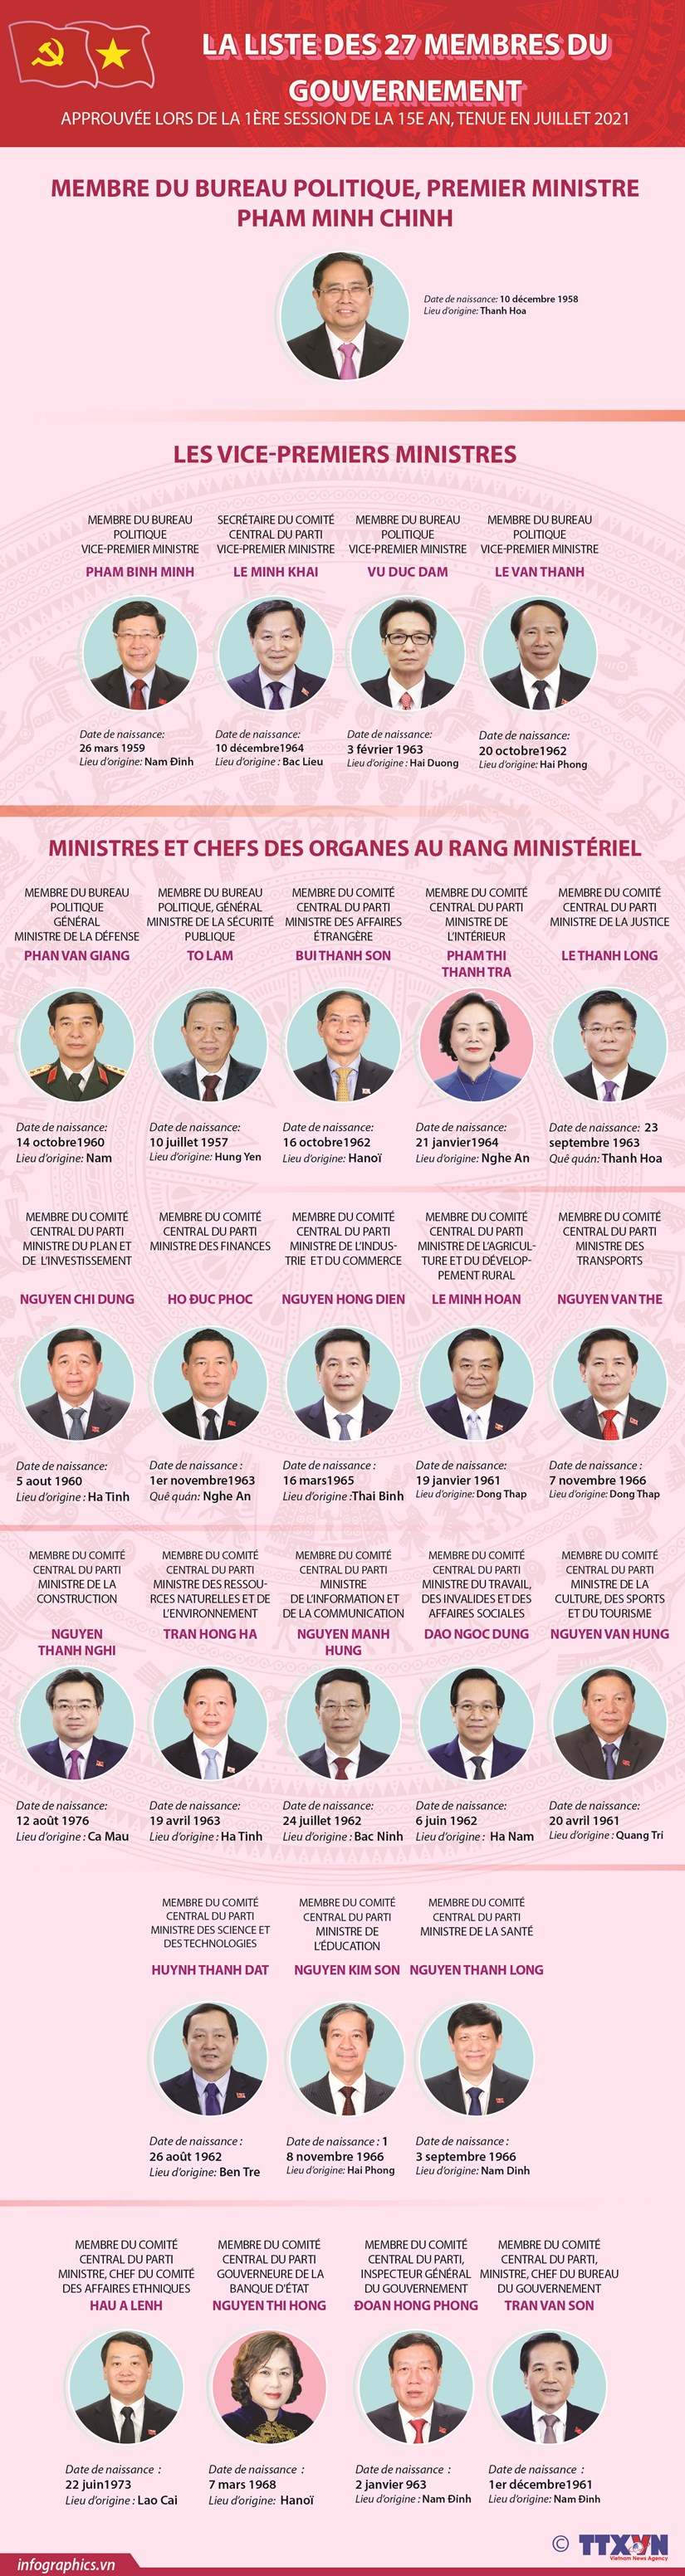 La liste des membres du gouvernement approuvee lors de la 1er session de la 15e AN hinh anh 1